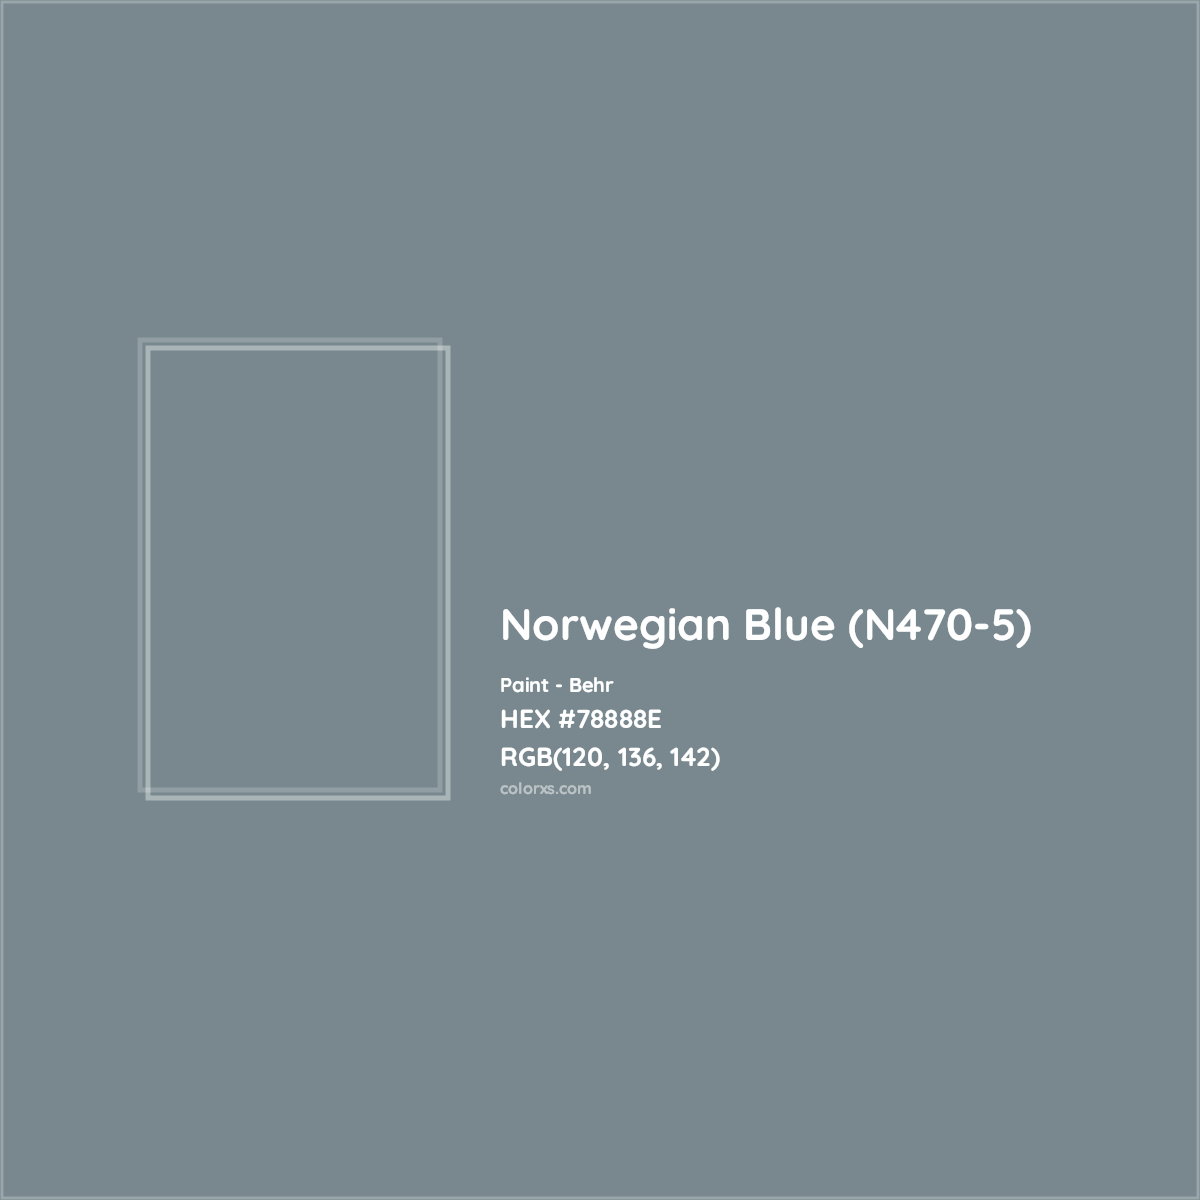 HEX #78888E Norwegian Blue (N470-5) Paint Behr - Color Code